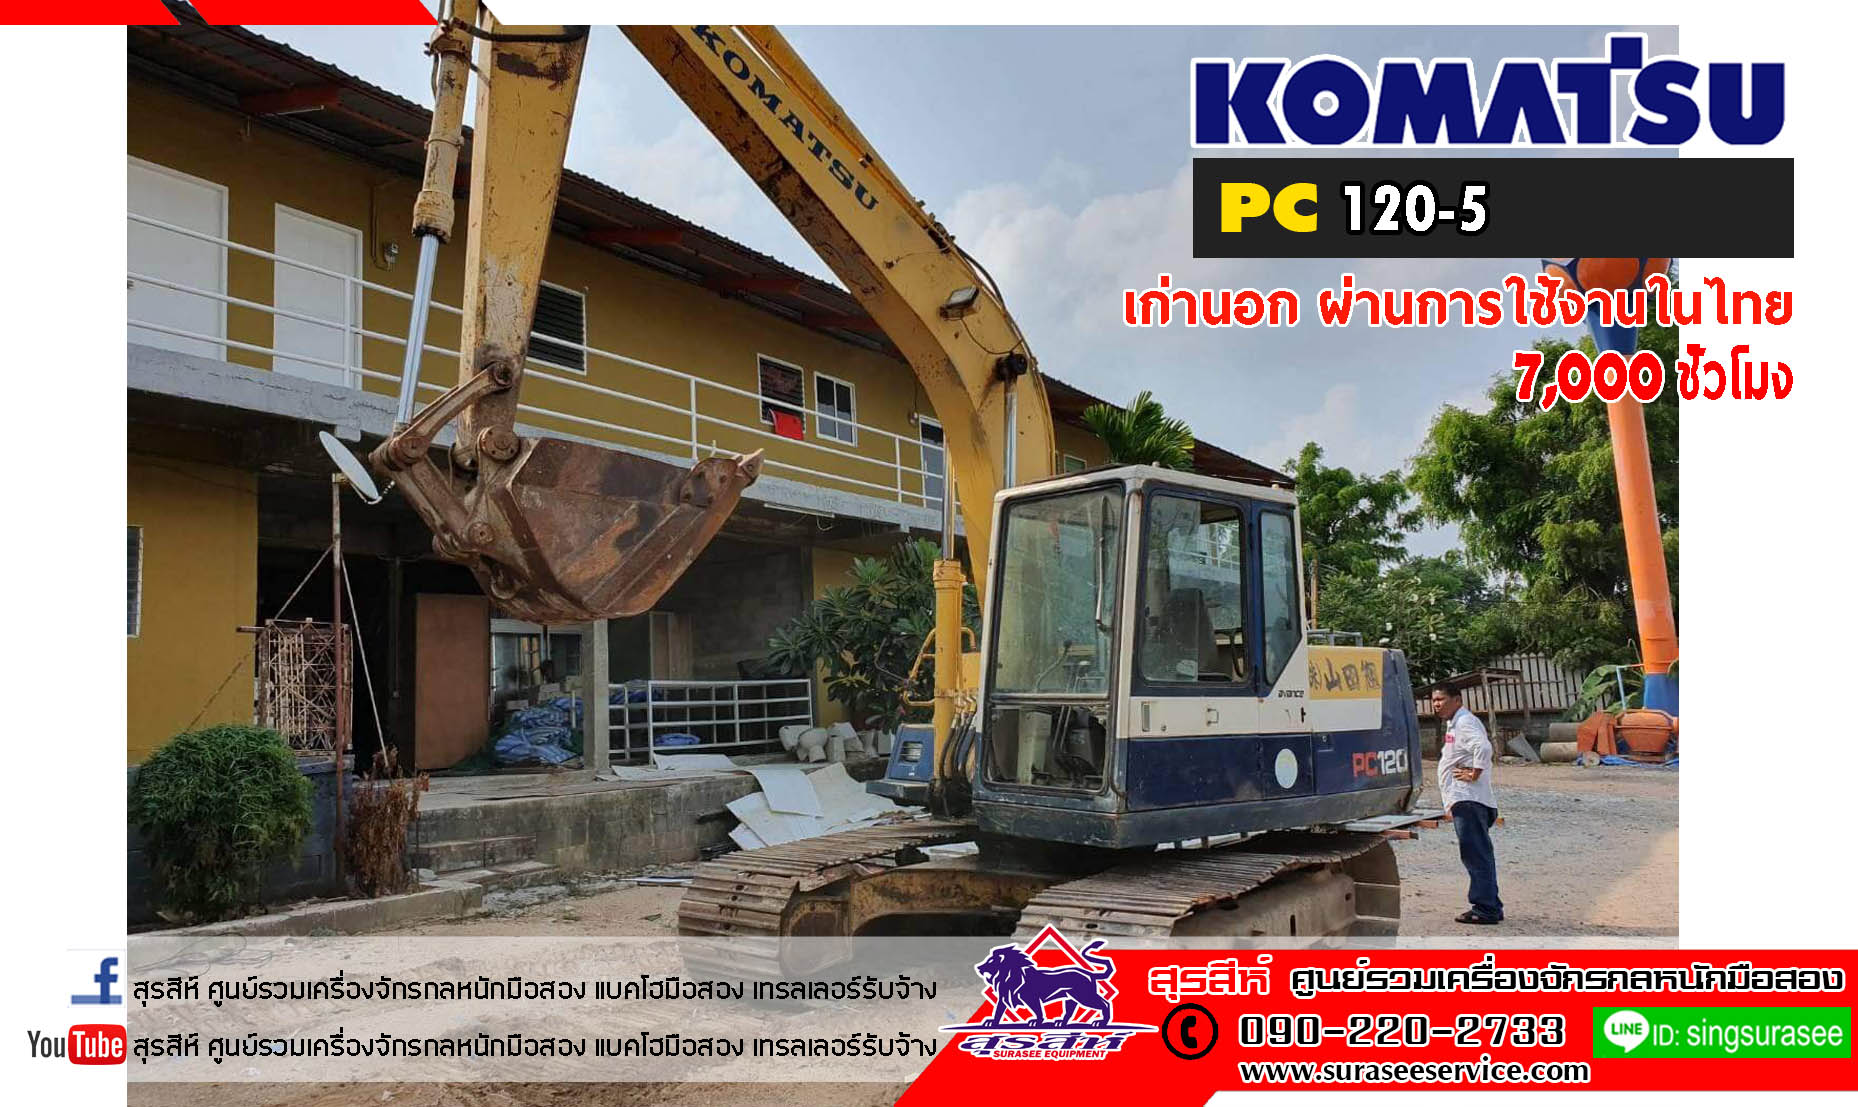 รถขุดมือสอง KOMATSU PC120-5 เก่านอกผ่านการใช้งานในไทย รวม 7 พันชั่วโมง